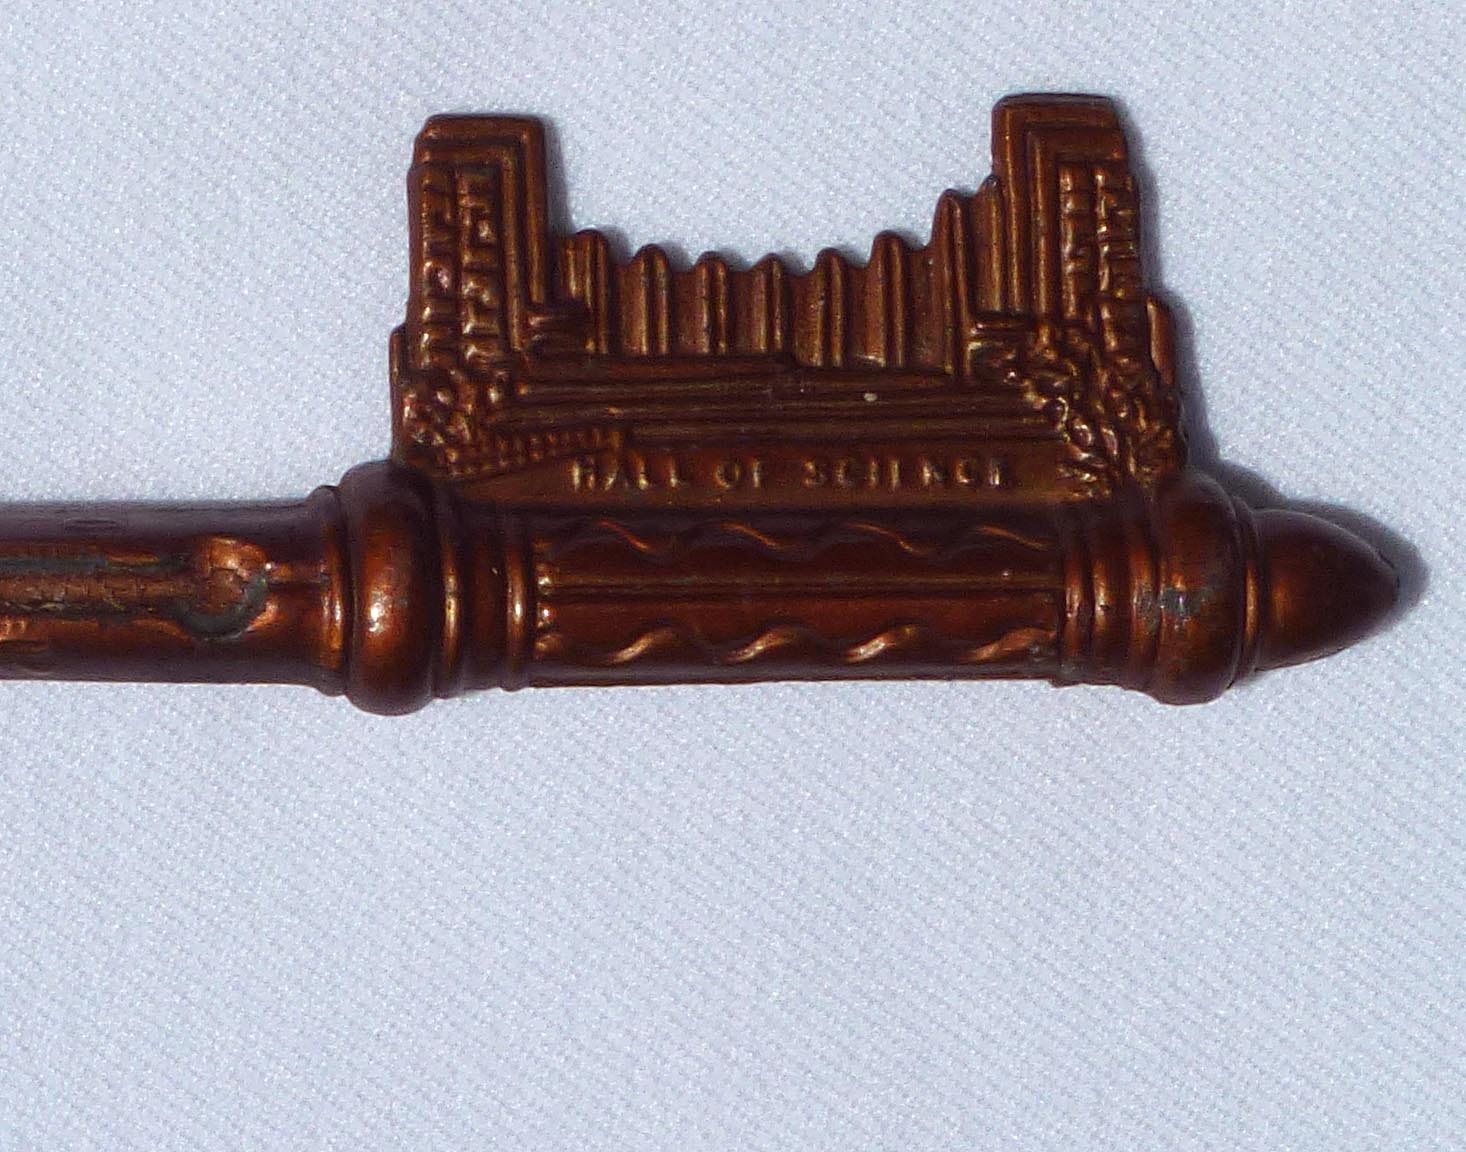 1934 World's Fair souvenir key